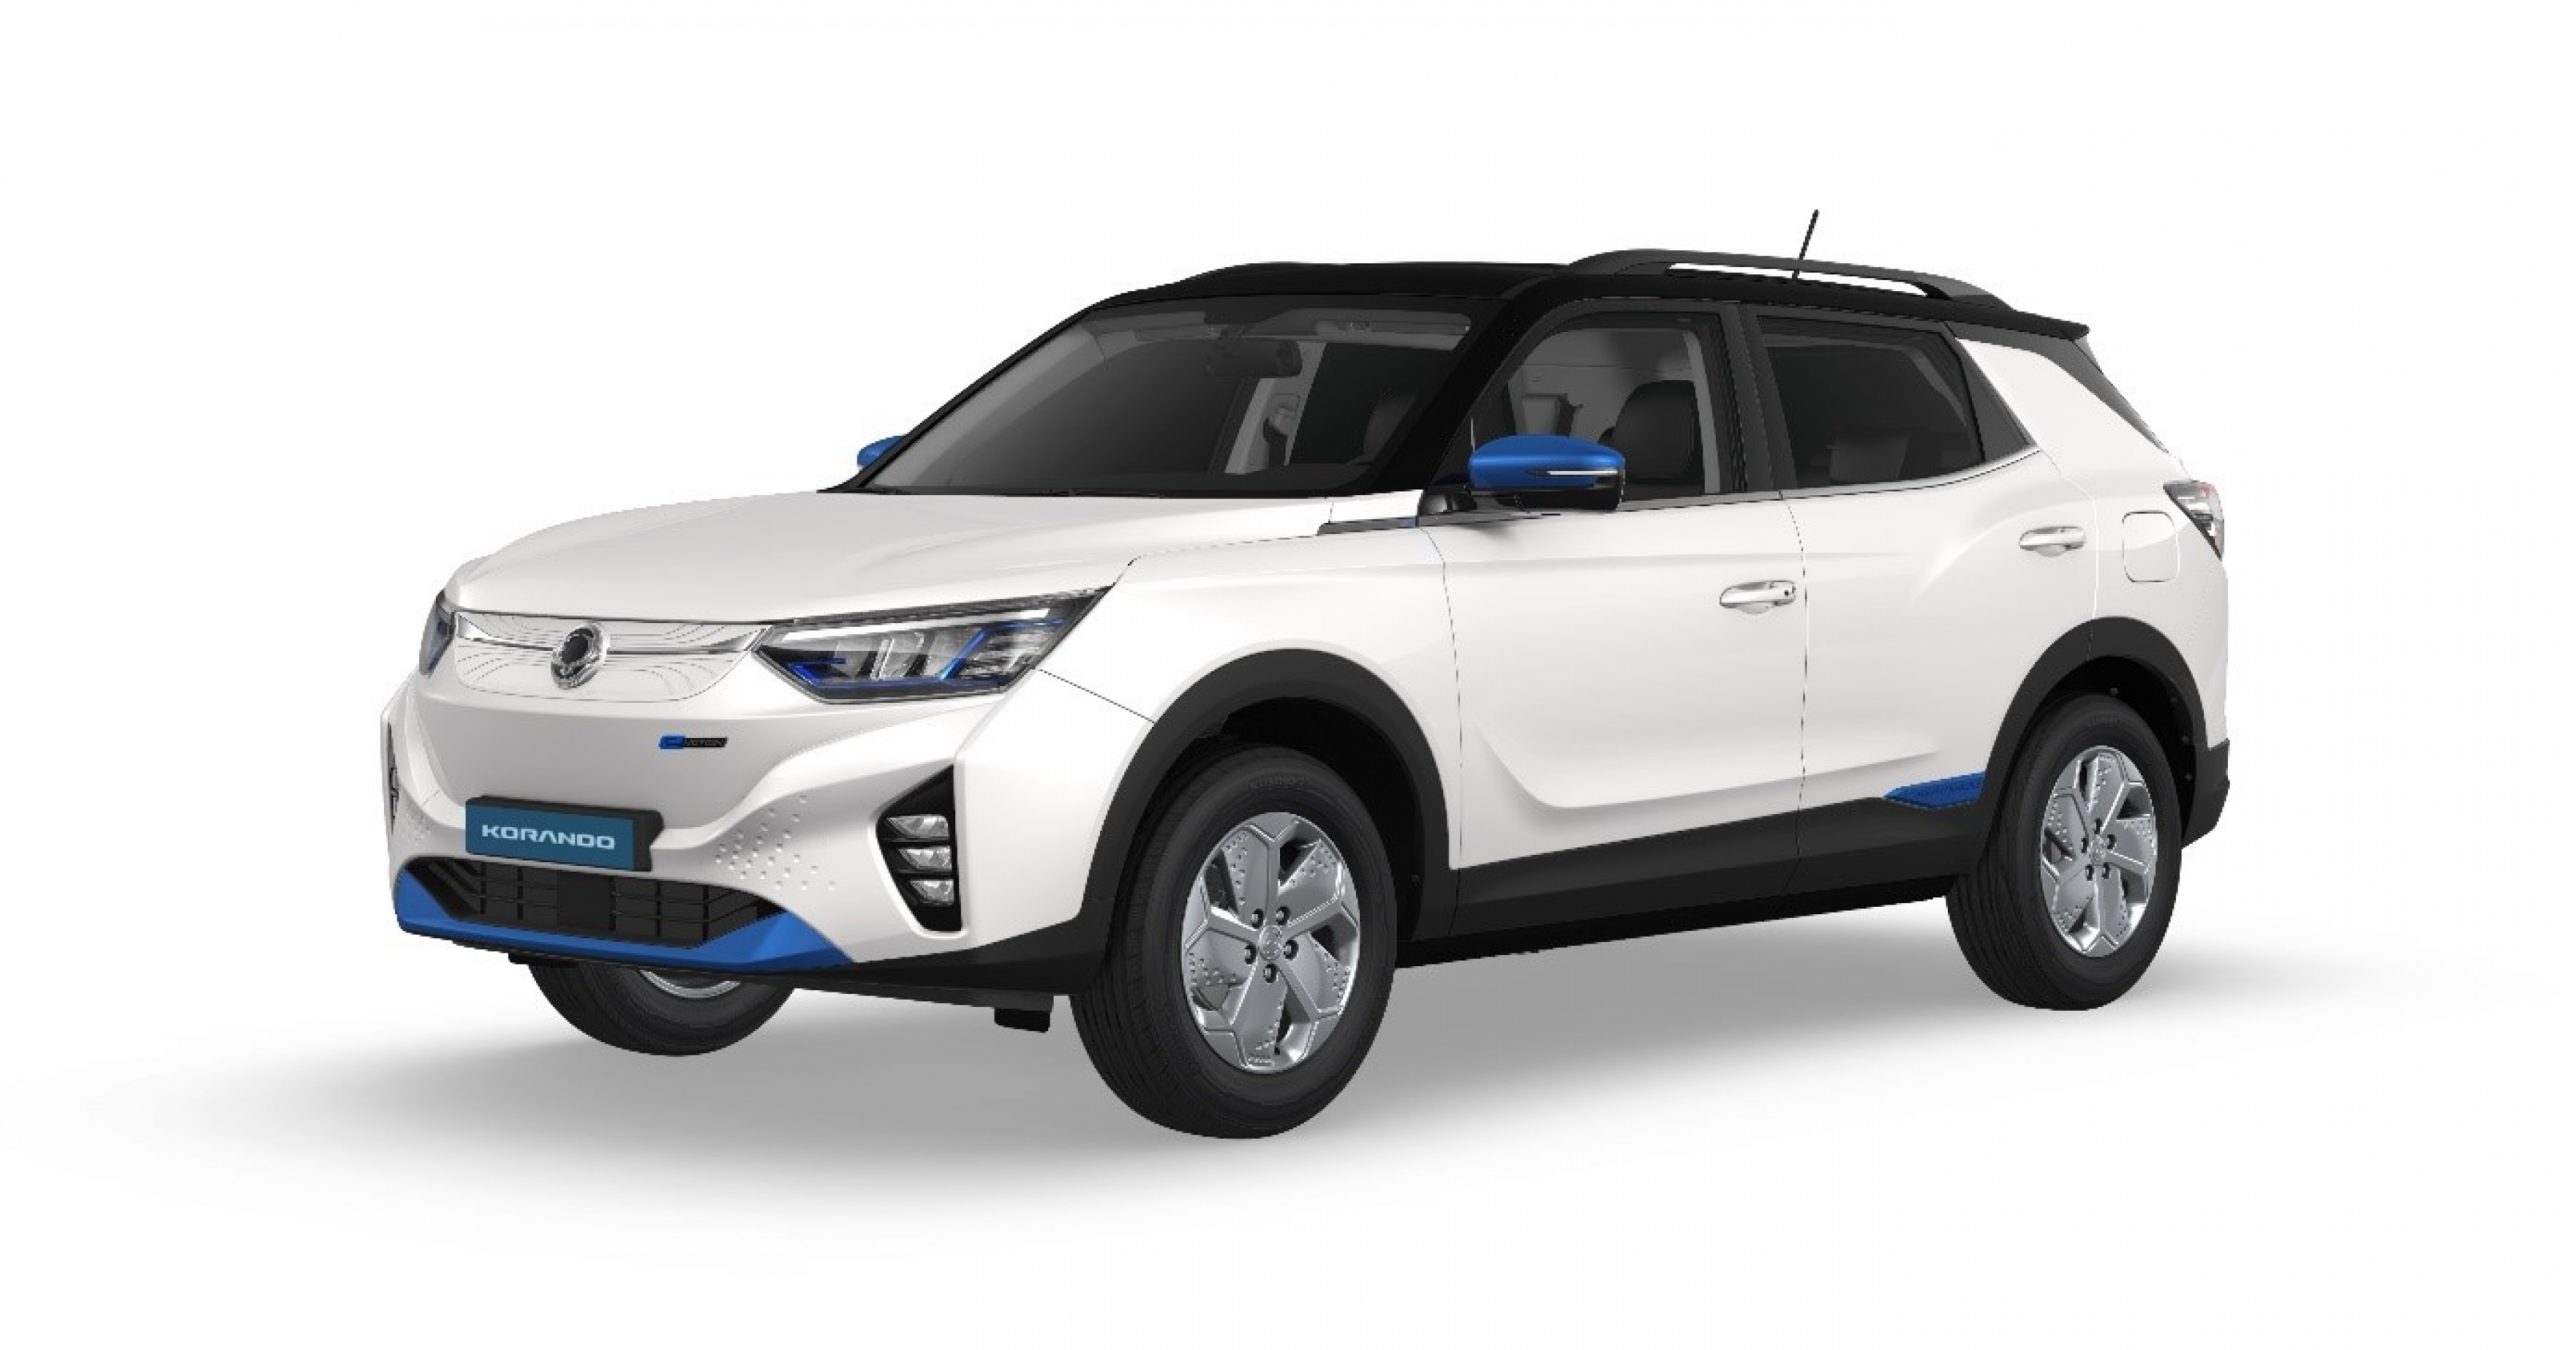 Le premier véhicule électrique de SsangYong sera lancé à l'automne